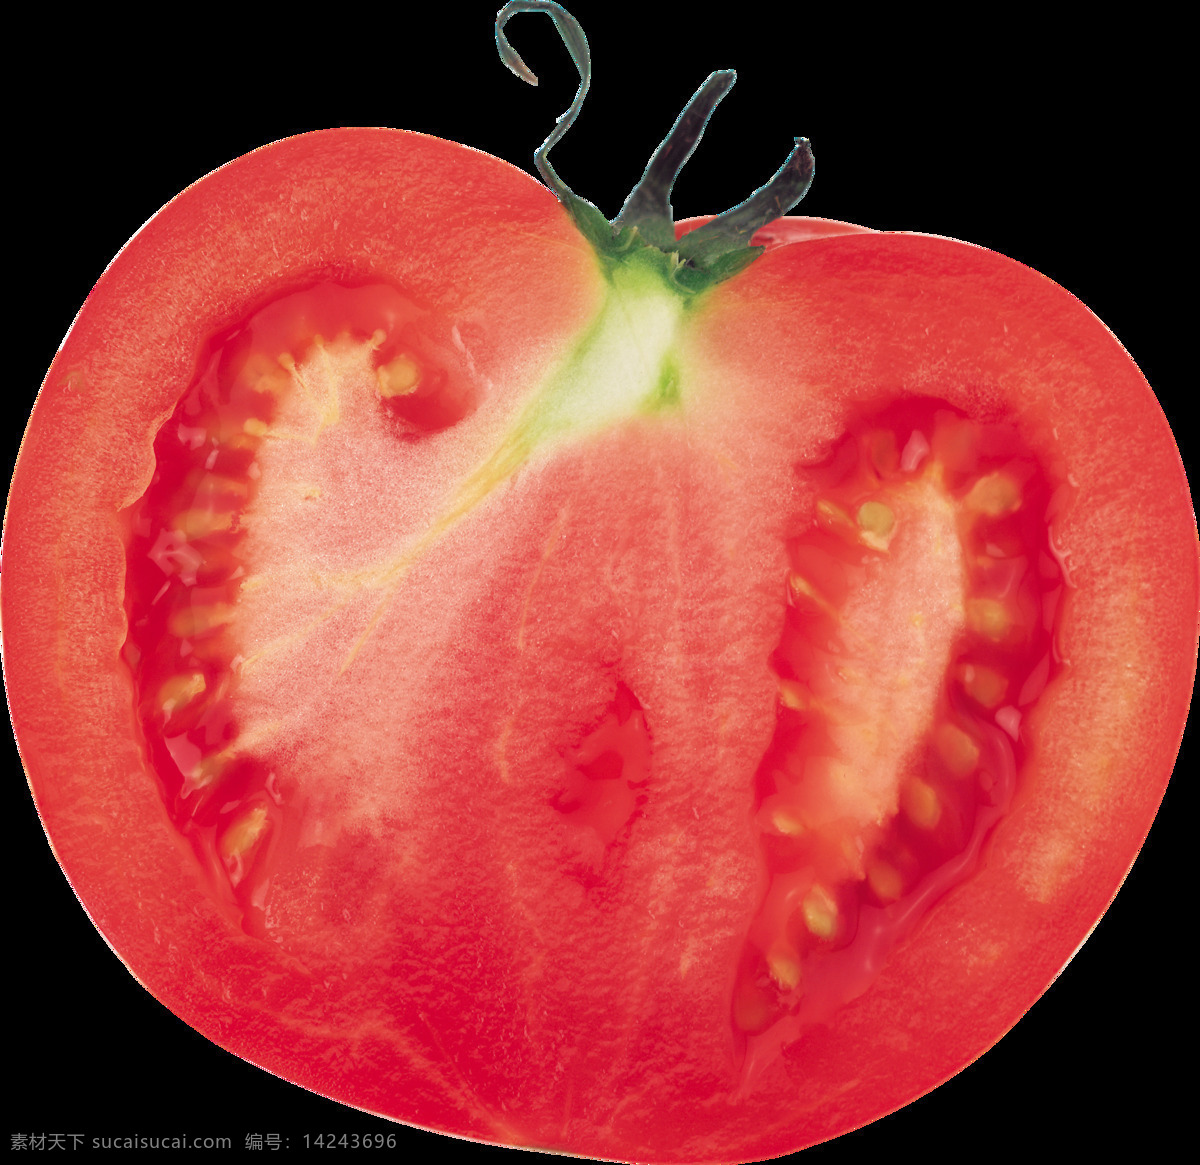 西红柿 水果素材 水果图案 水果底纹 水果背景 水果 果蔬素材 果蔬背景 果蔬海报 水果沙拉 沙拉 水果布丁 水果寿司 水果类 瓜果 果子 生活用品 生活百科